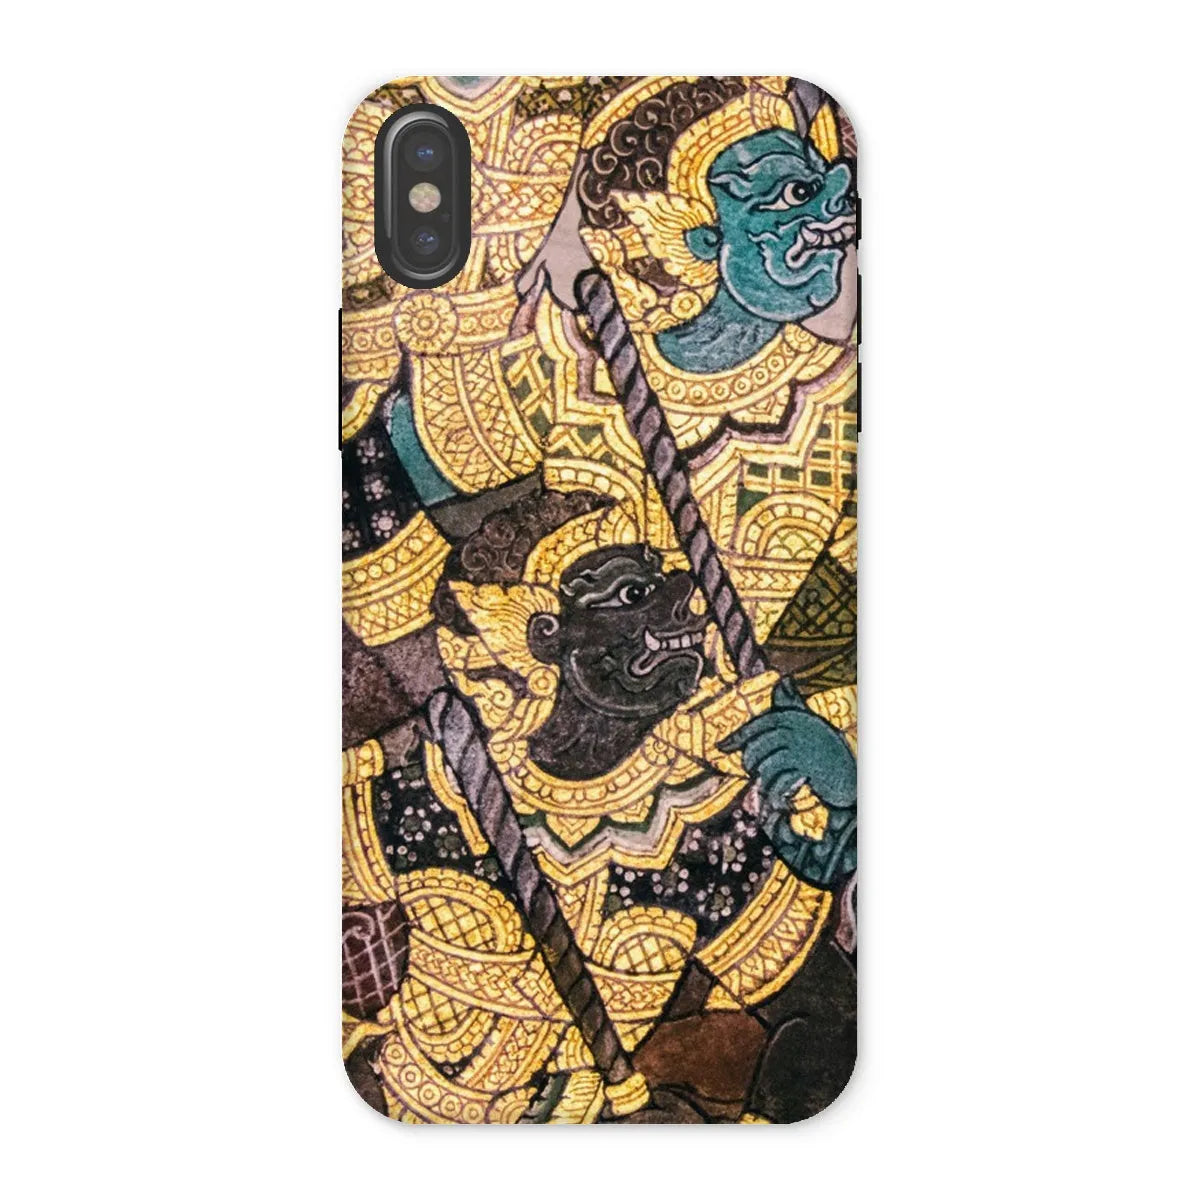 Action Men - Ancient Thai Temple Art Phone Case - Iphone x / Matte - Mobile Phone Cases - Aesthetic Art